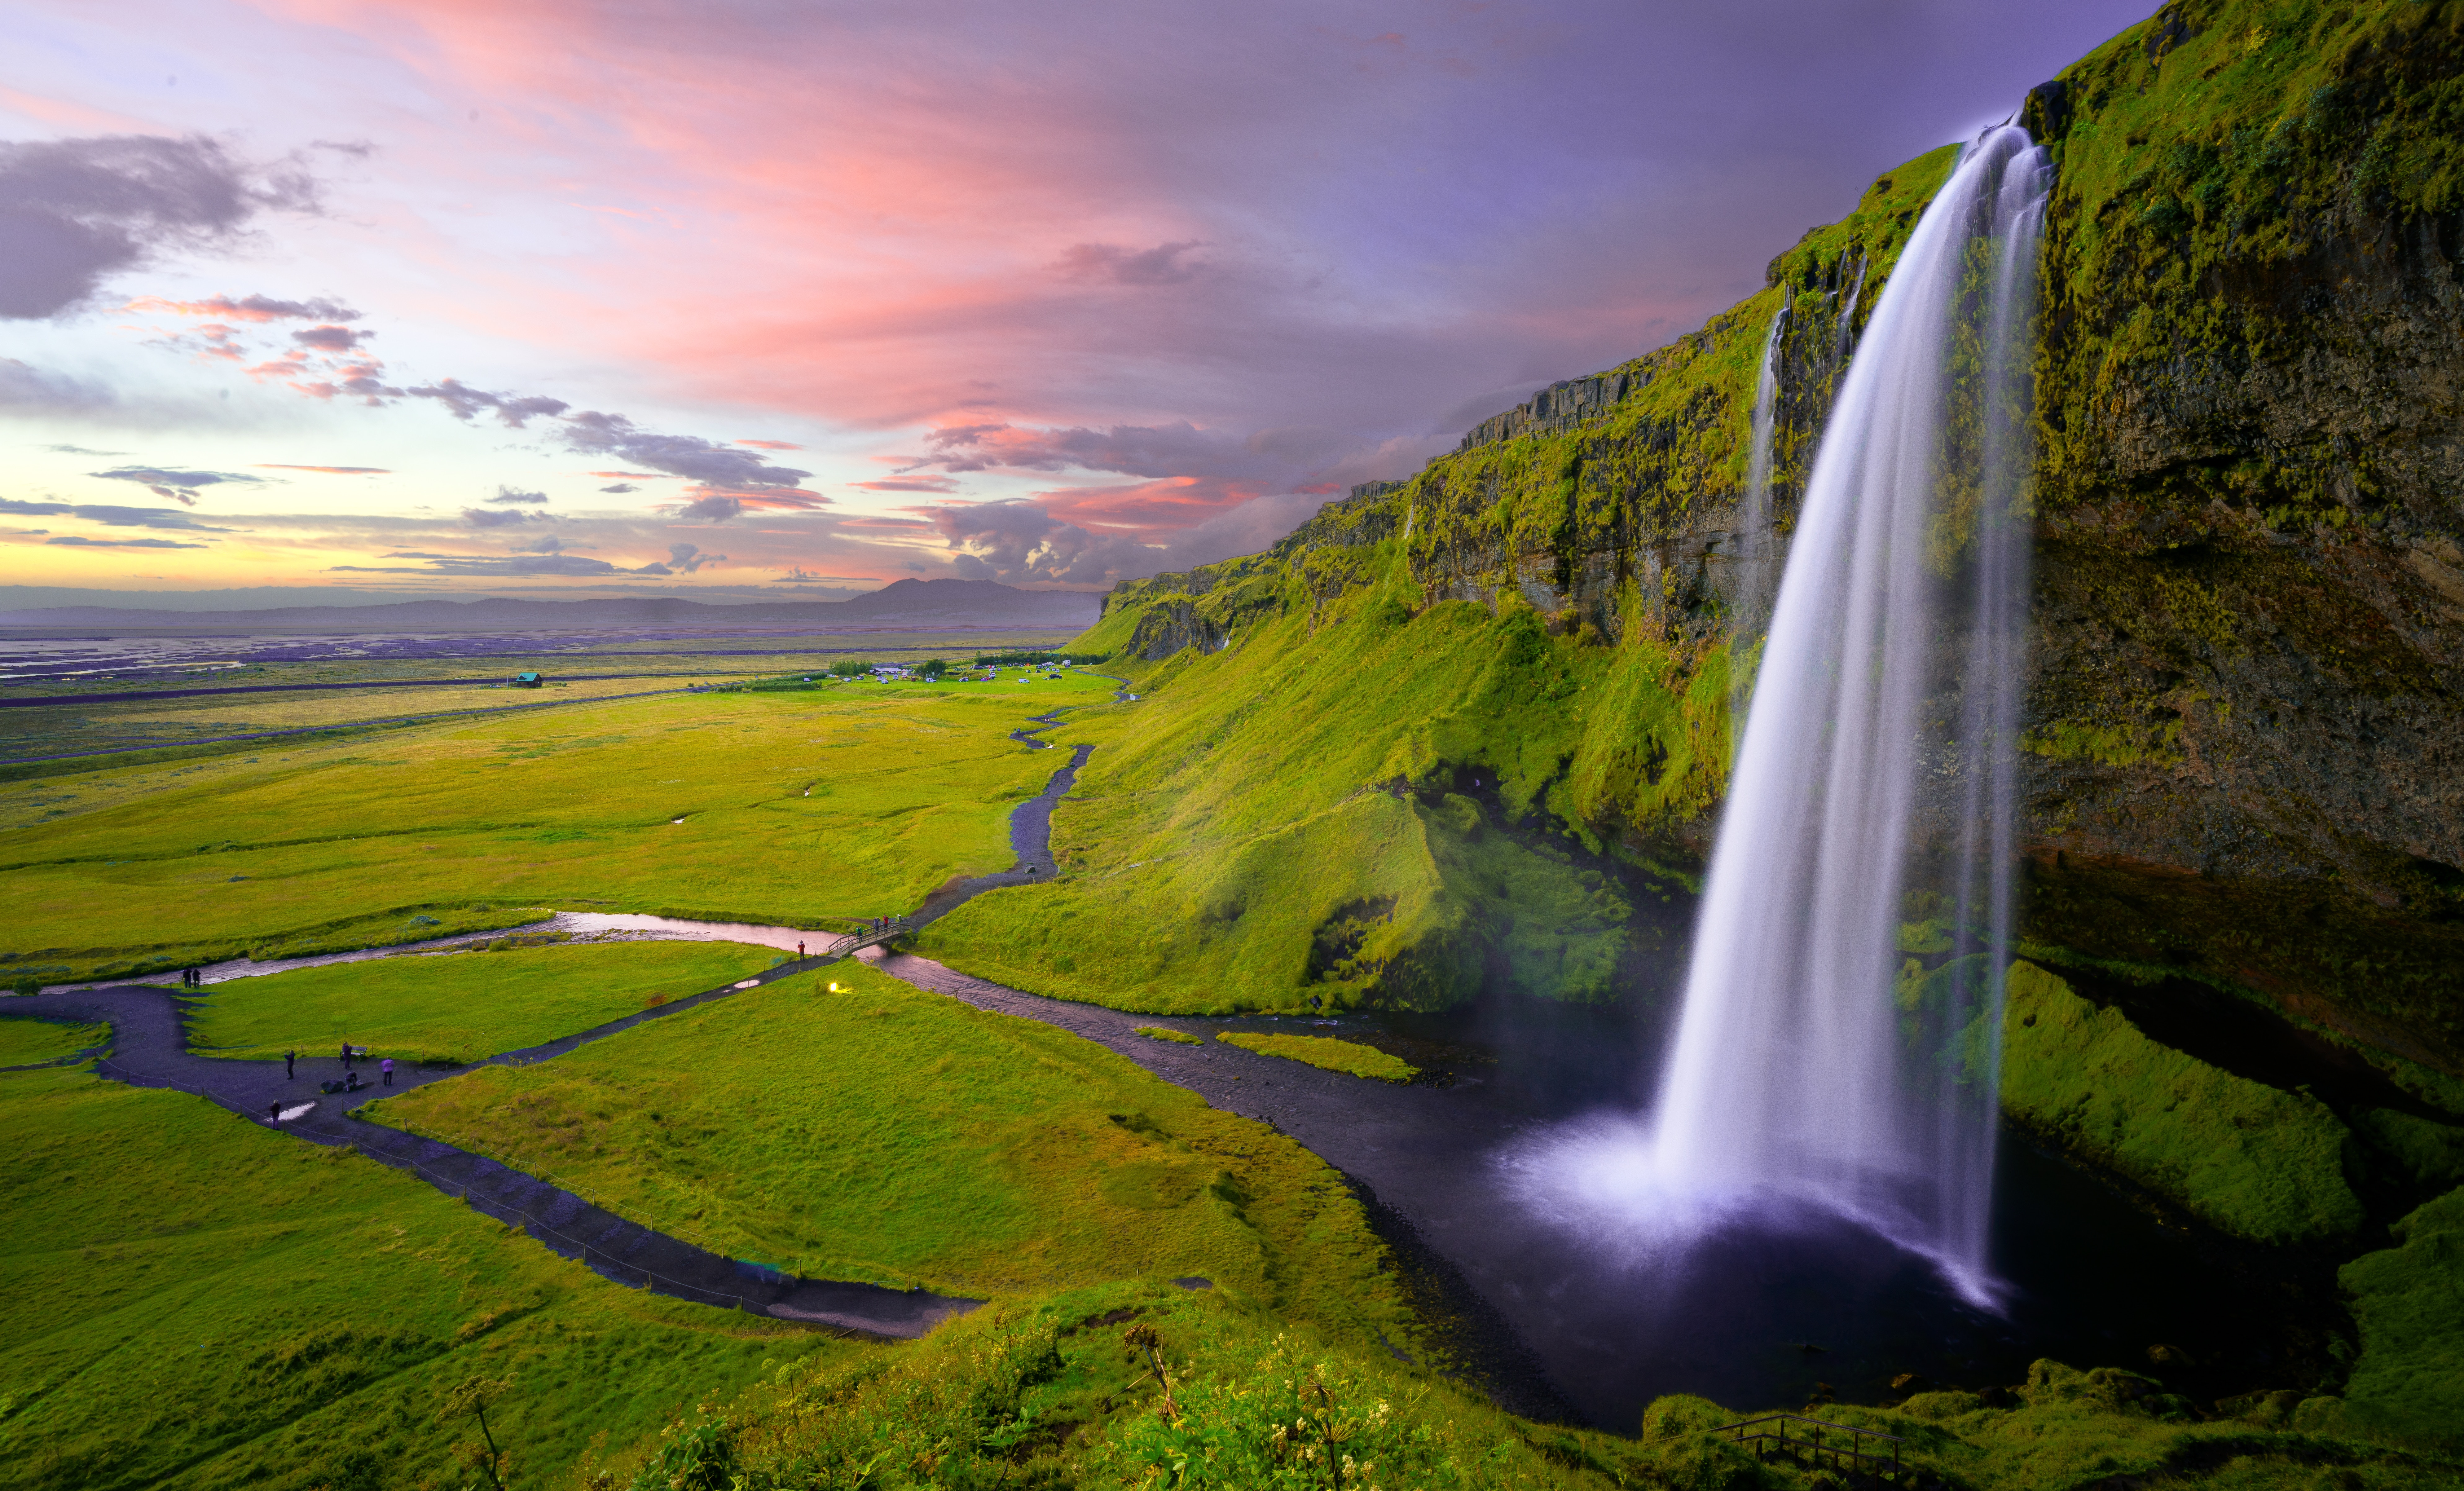 Скачать обои Исландия на телефон бесплатно